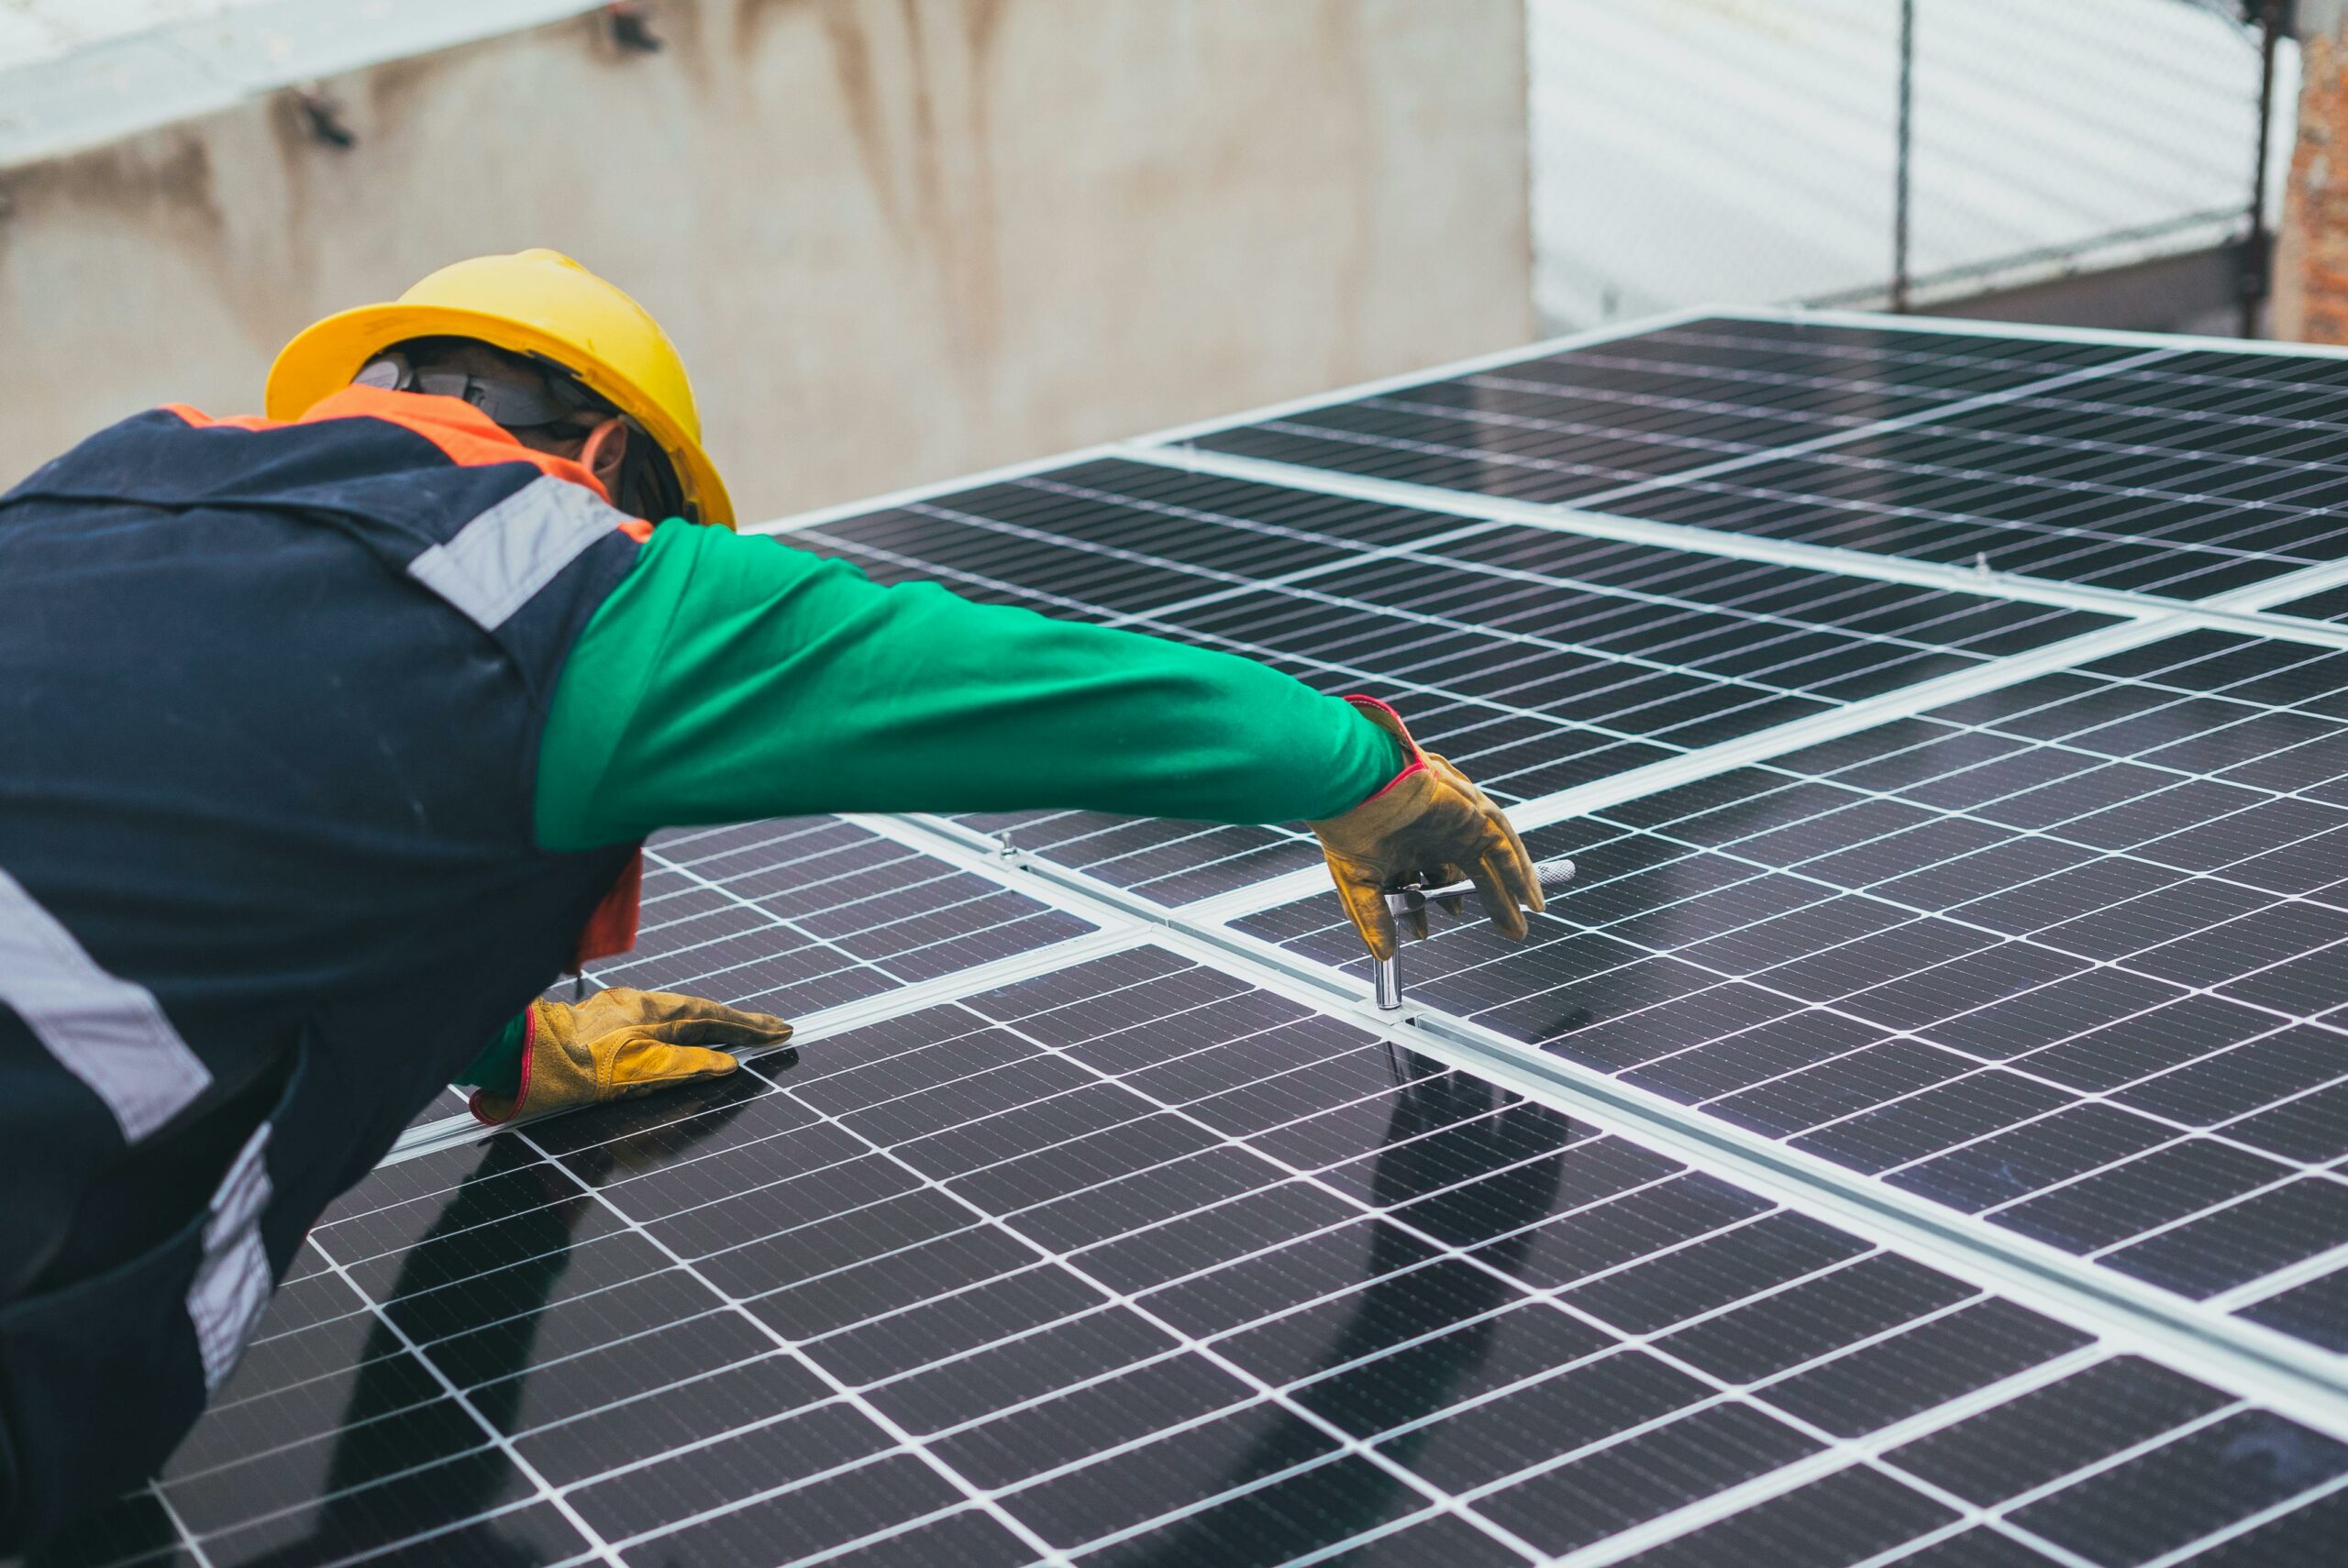 Un ouvrier en tenue de sécurité installe des panneaux solaires sur un toit, mettant en évidence l'importance de l'énergie renouvelable.